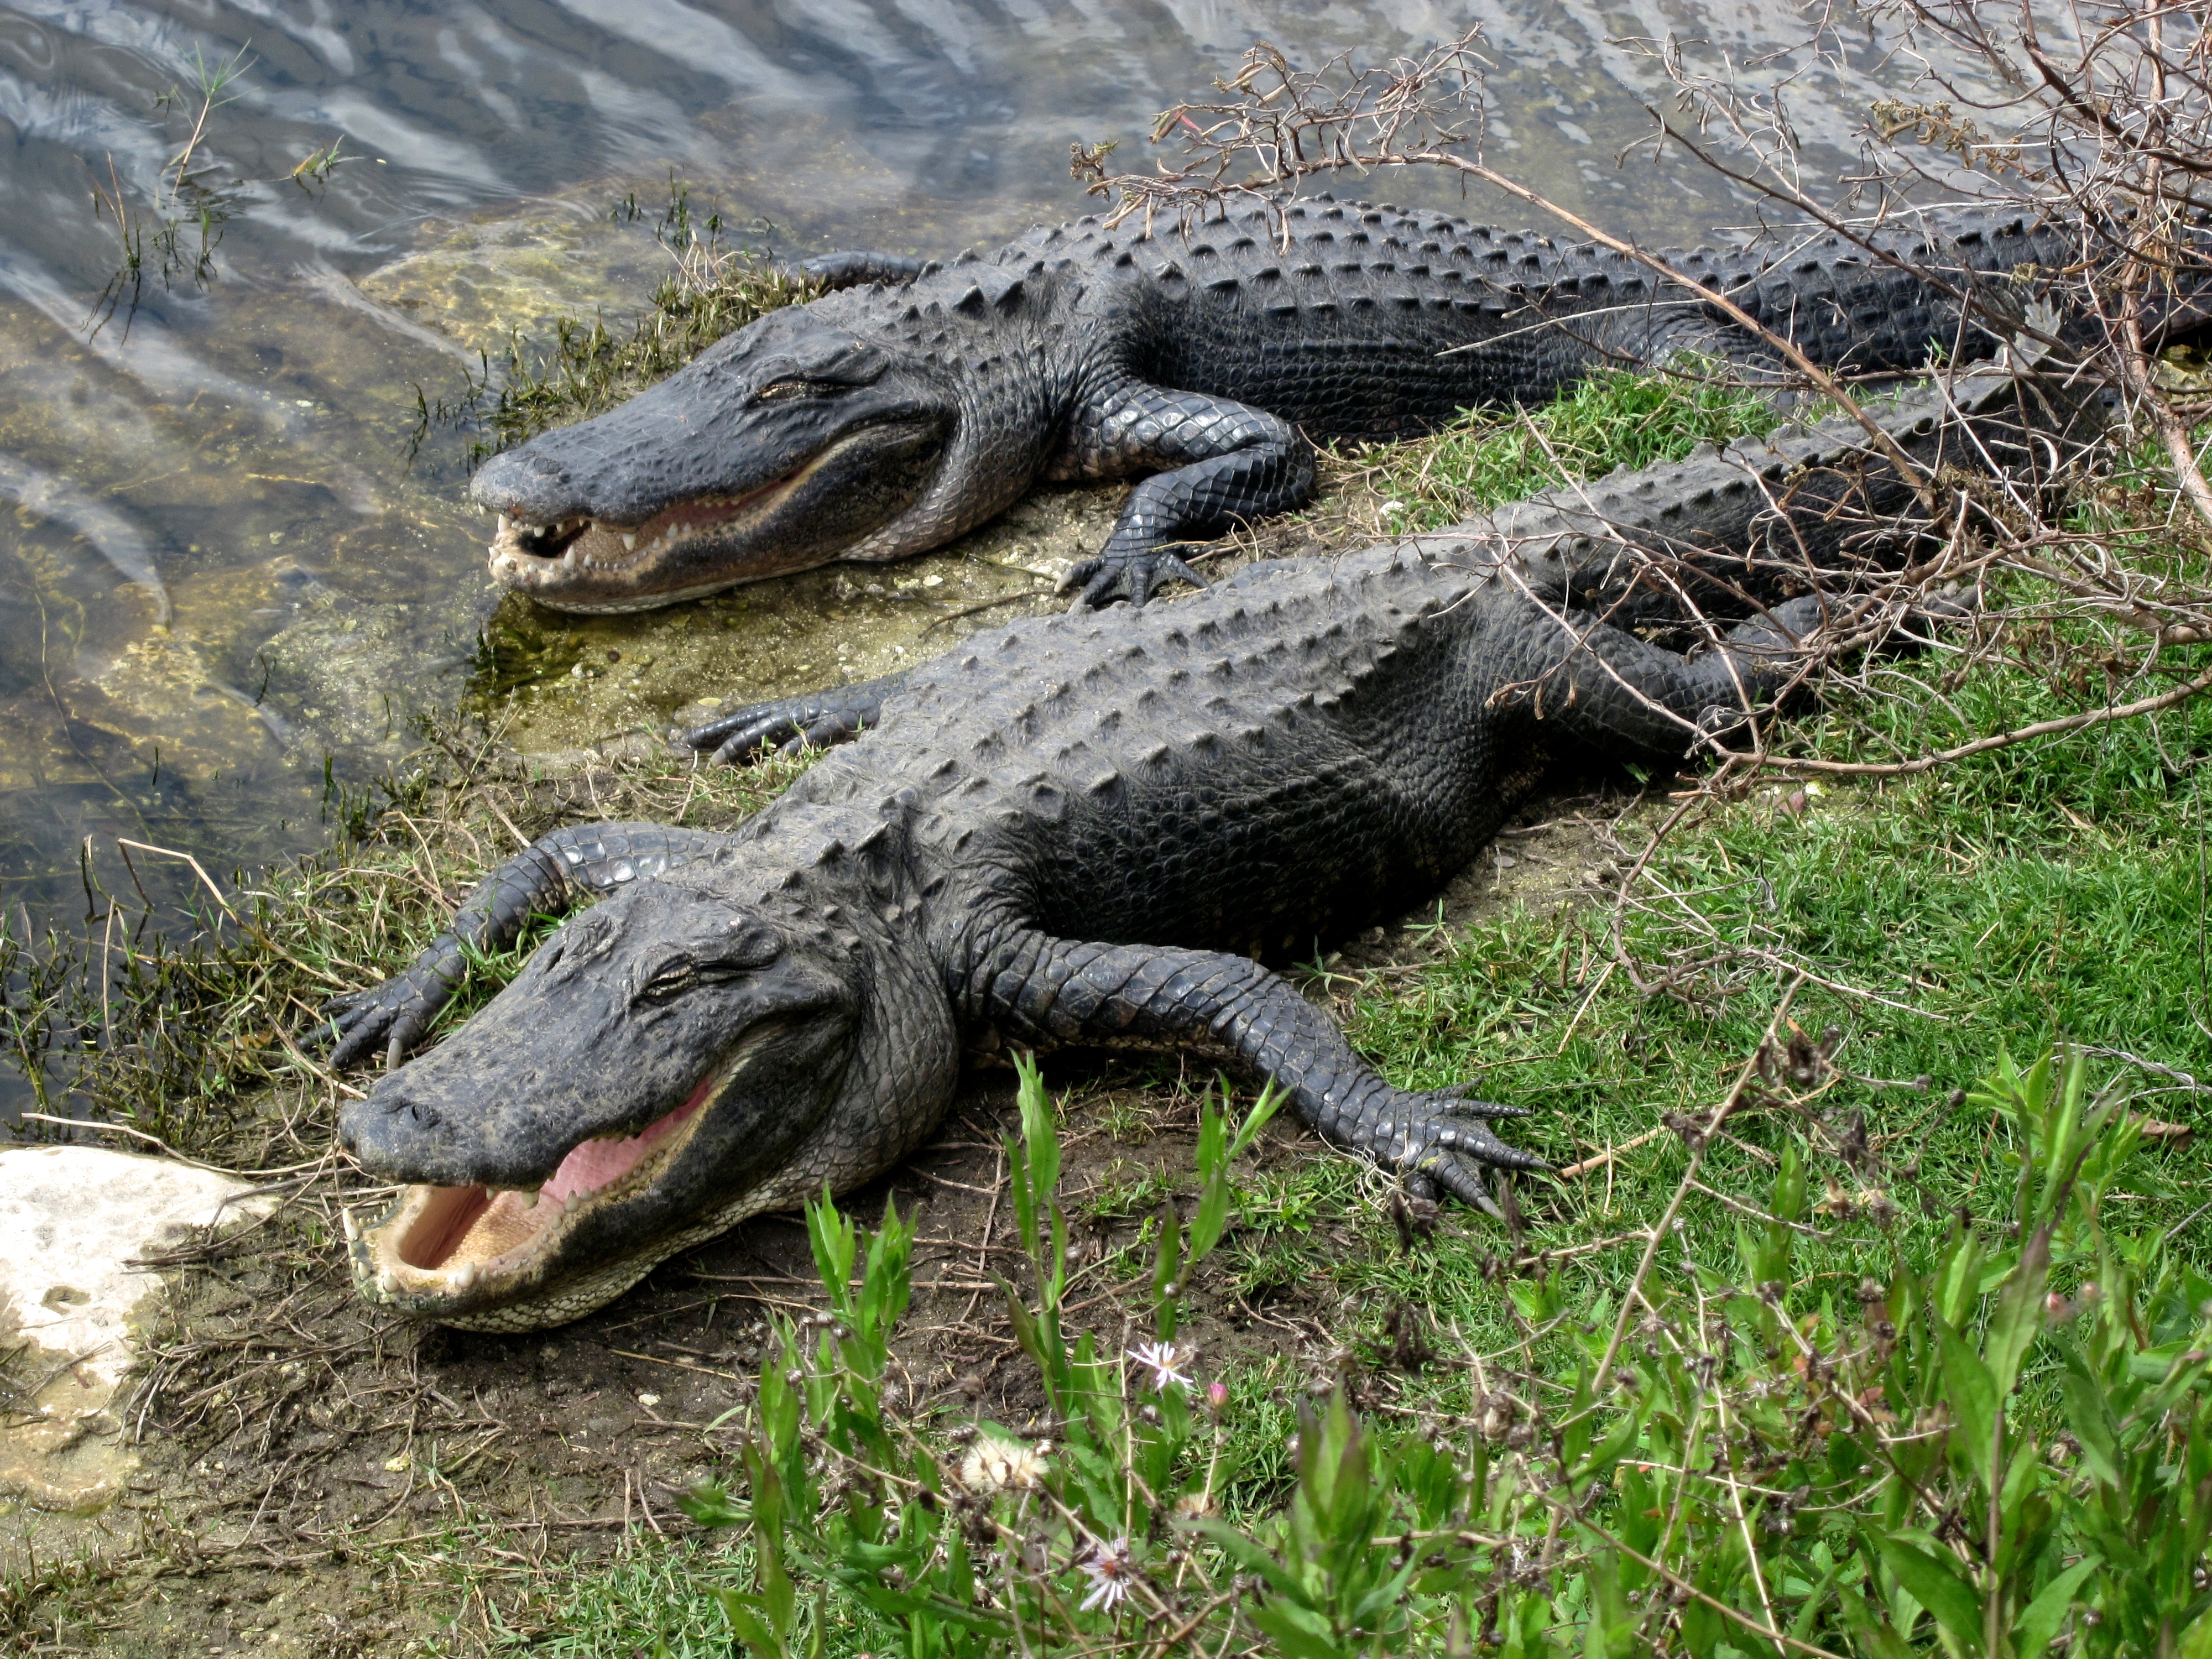 florida keys alligators | What Next?